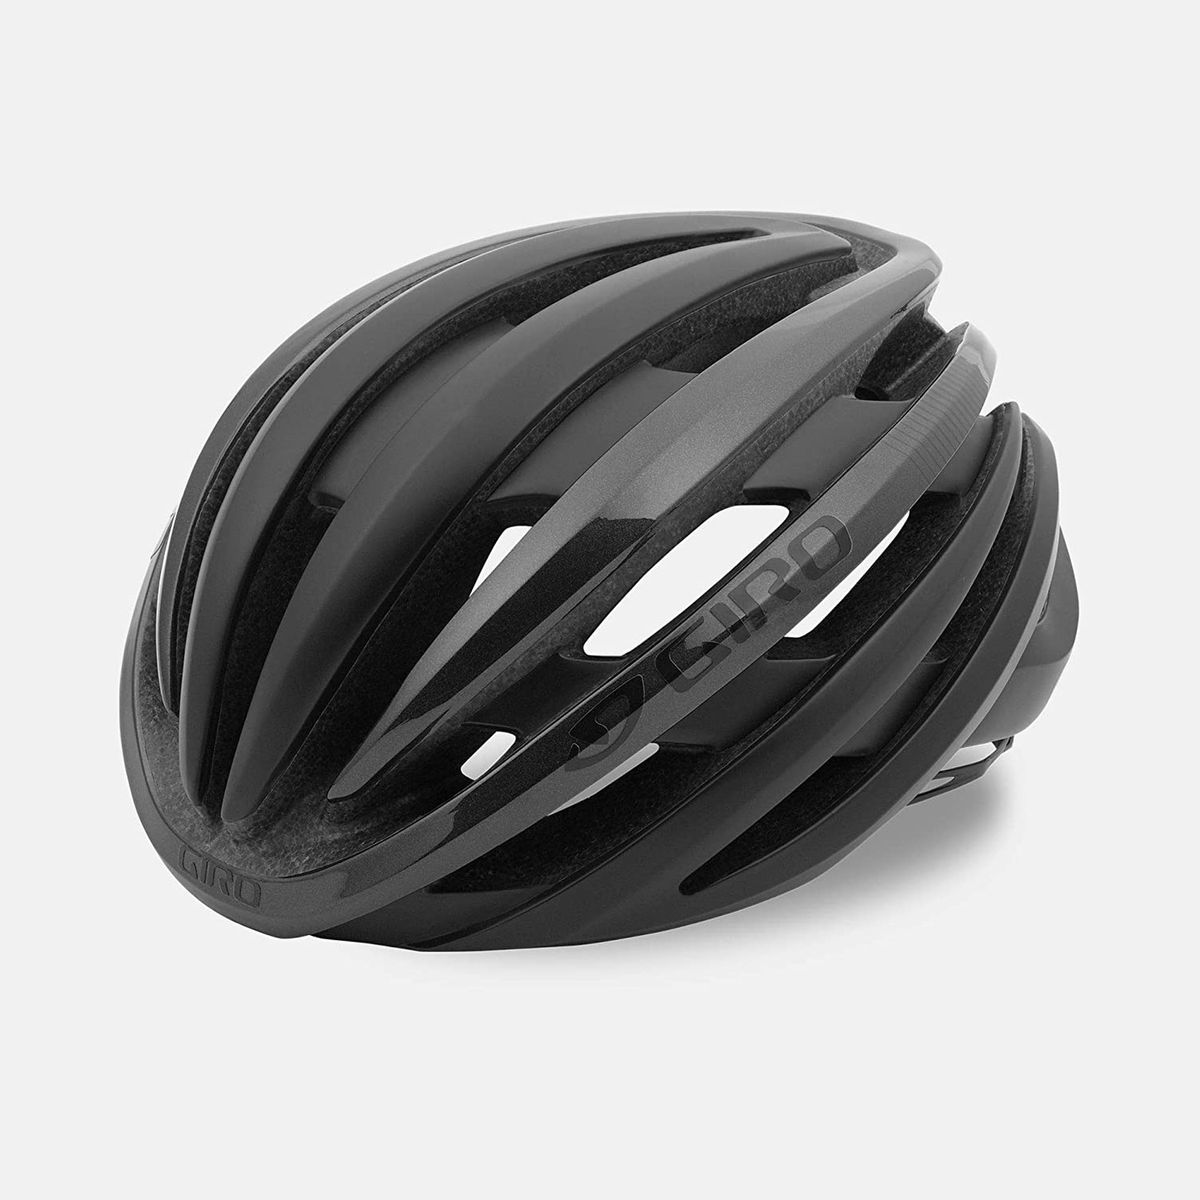 comfortable bike helmet